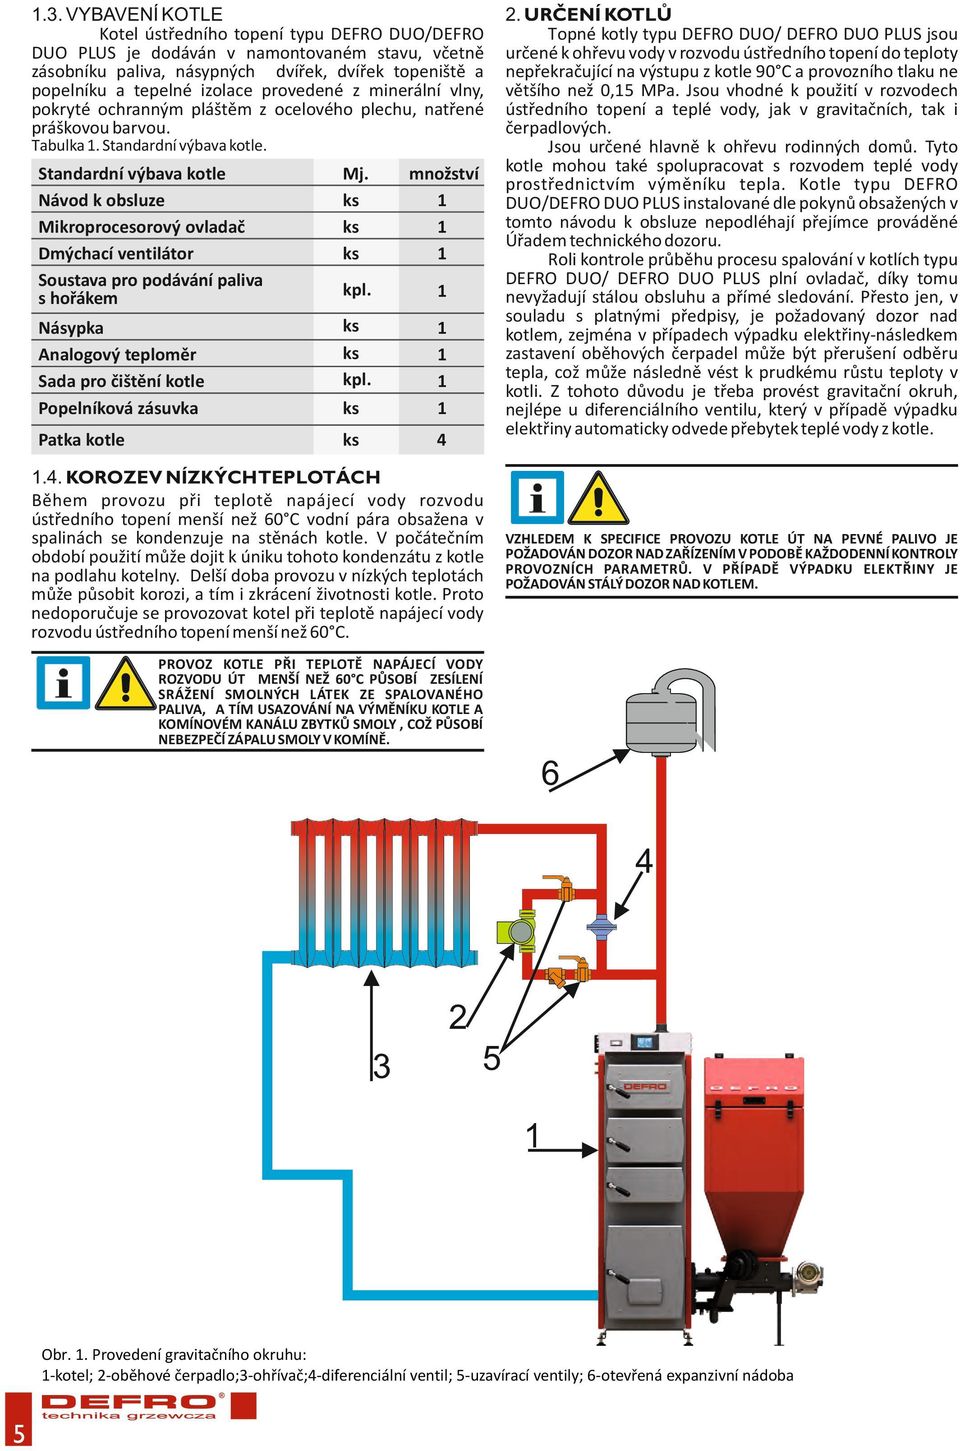 Standardní výbava kotle Návod k obsluze Mikroprocesorový ovladač Dmýchací ventilátor Soustava pro podávání paliva s hořákem Mj. ks ks ks množství 1 1 1 kpl.